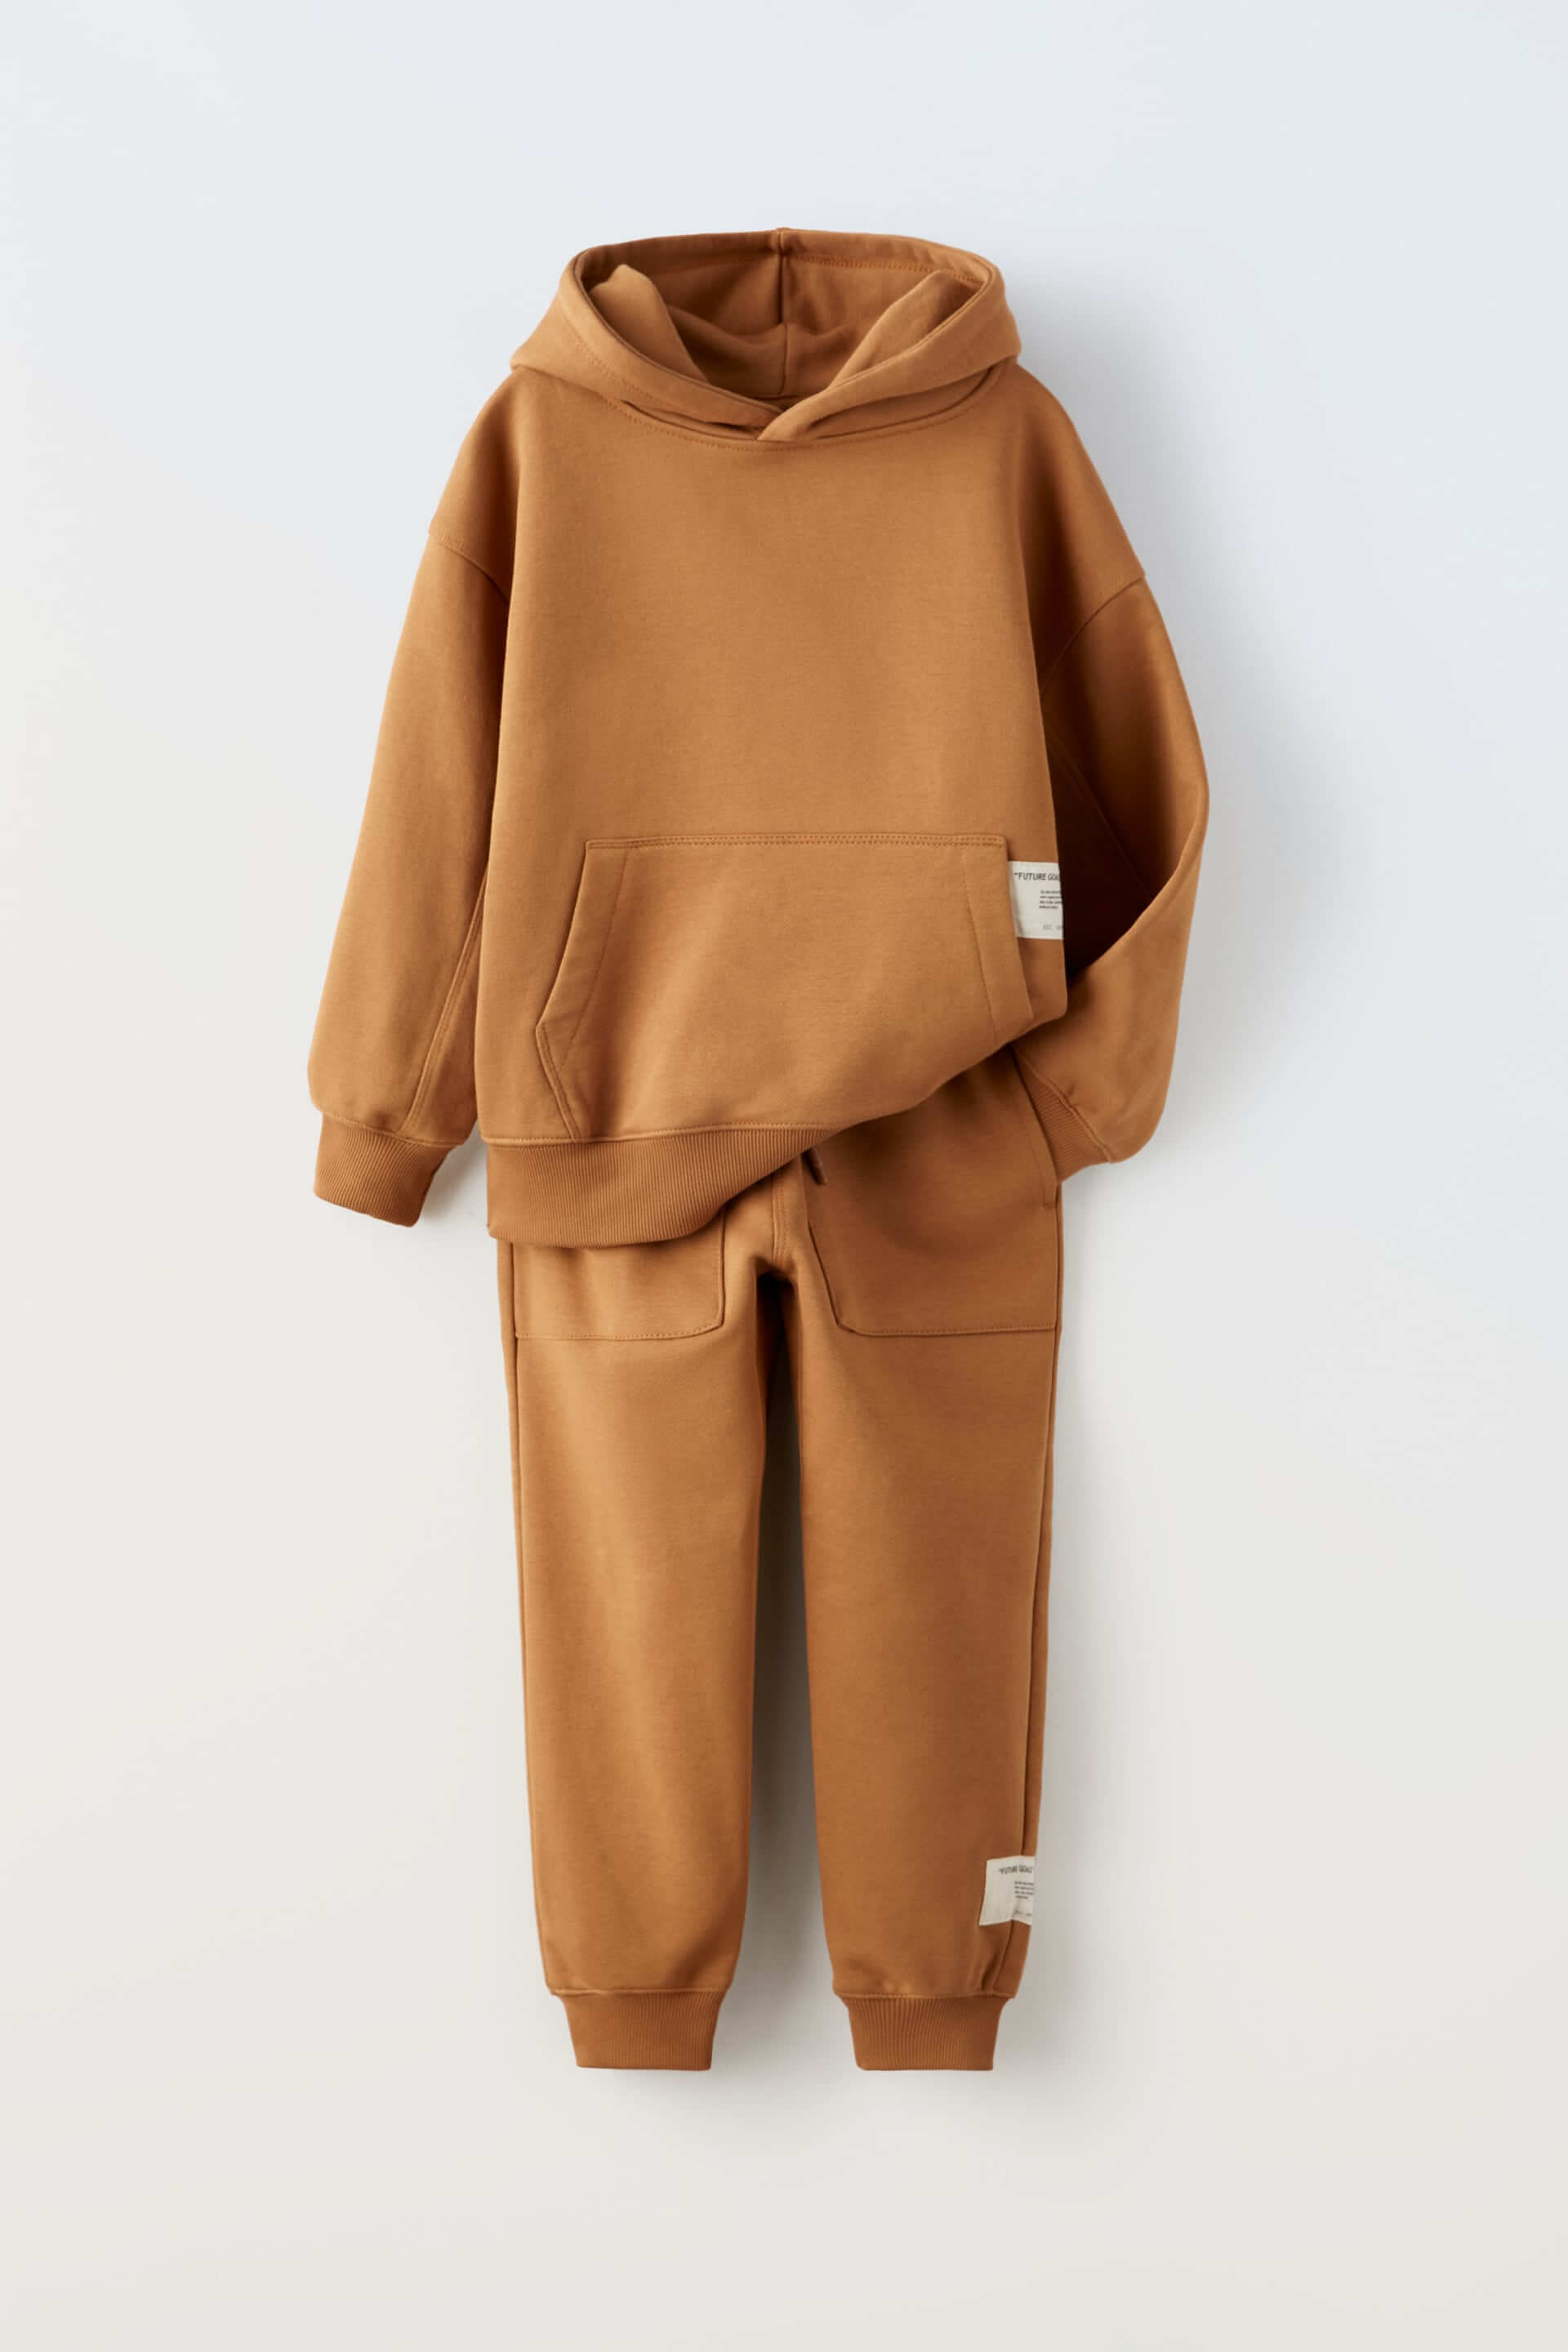 Комплект из худи и брюк Zara Plush, 2 предмета, терракотовый